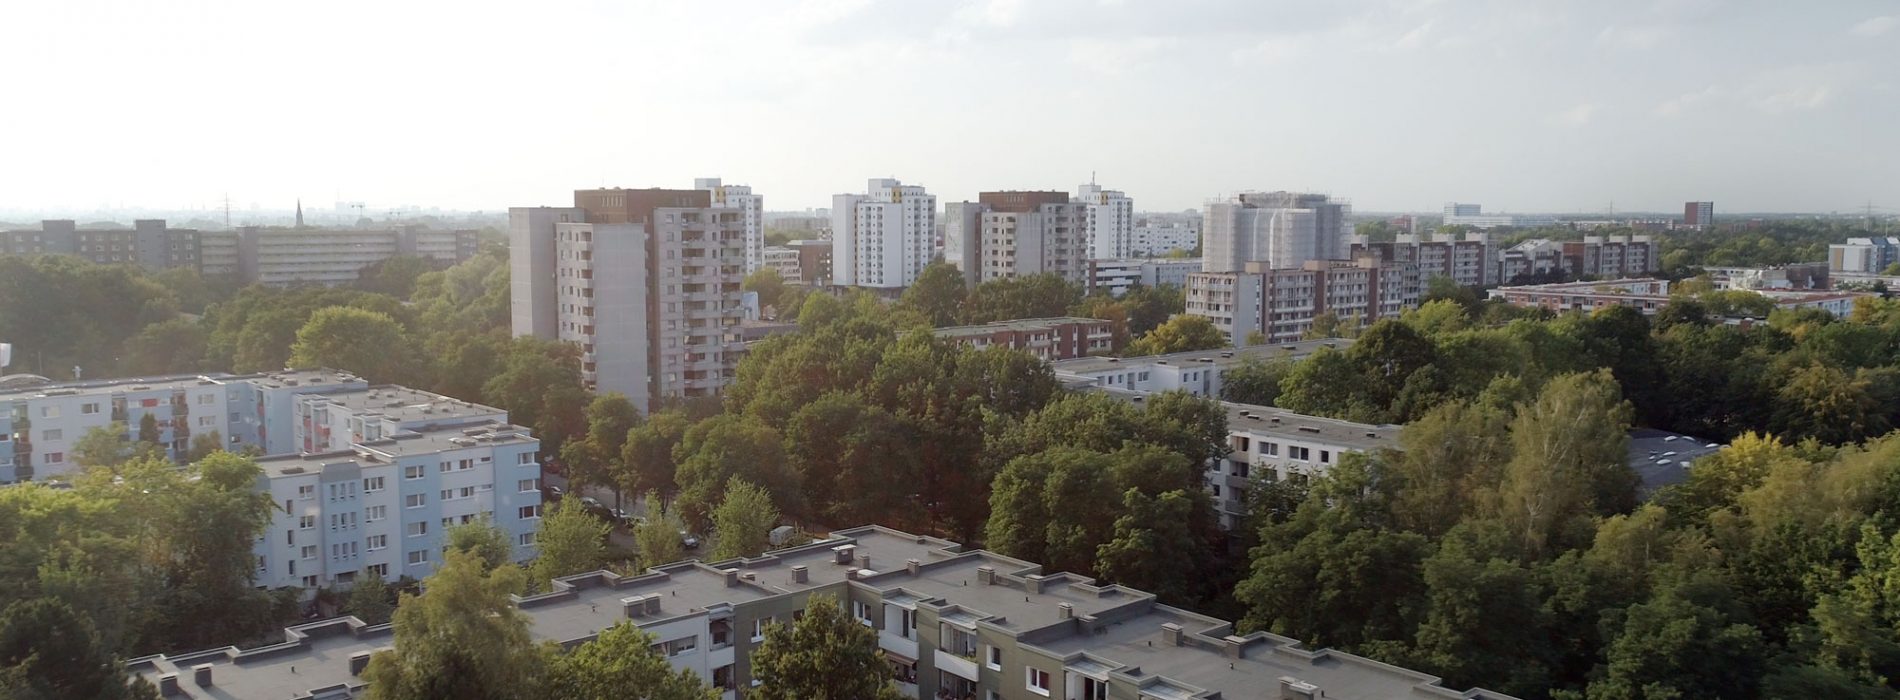 Luftaufnahme des Stadtteils Mümmelmannsberg mit vielen Hochhäusern und vielen Bäumen.